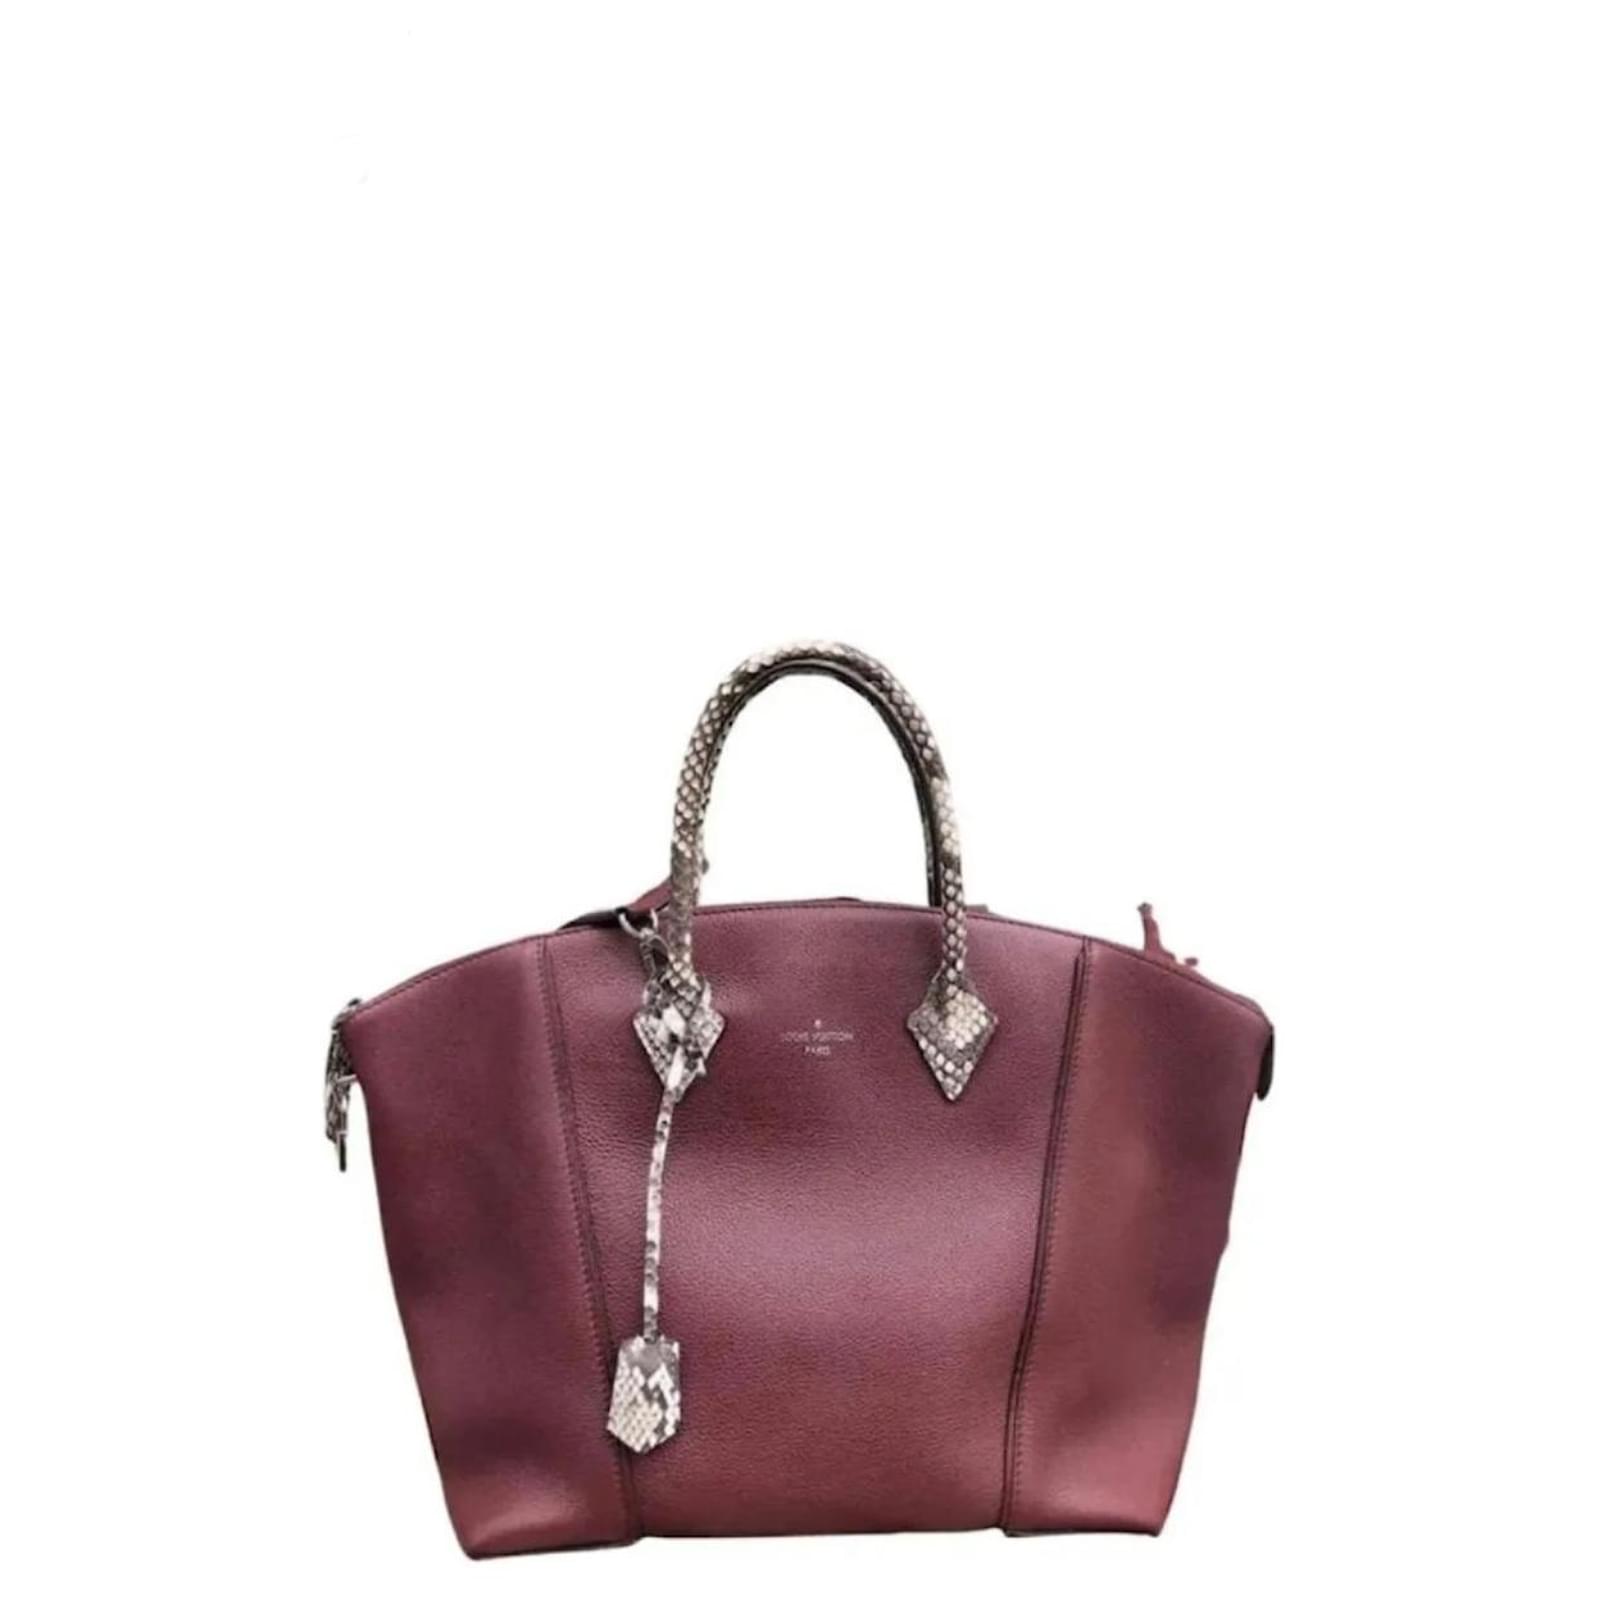 Lockit leather handbag